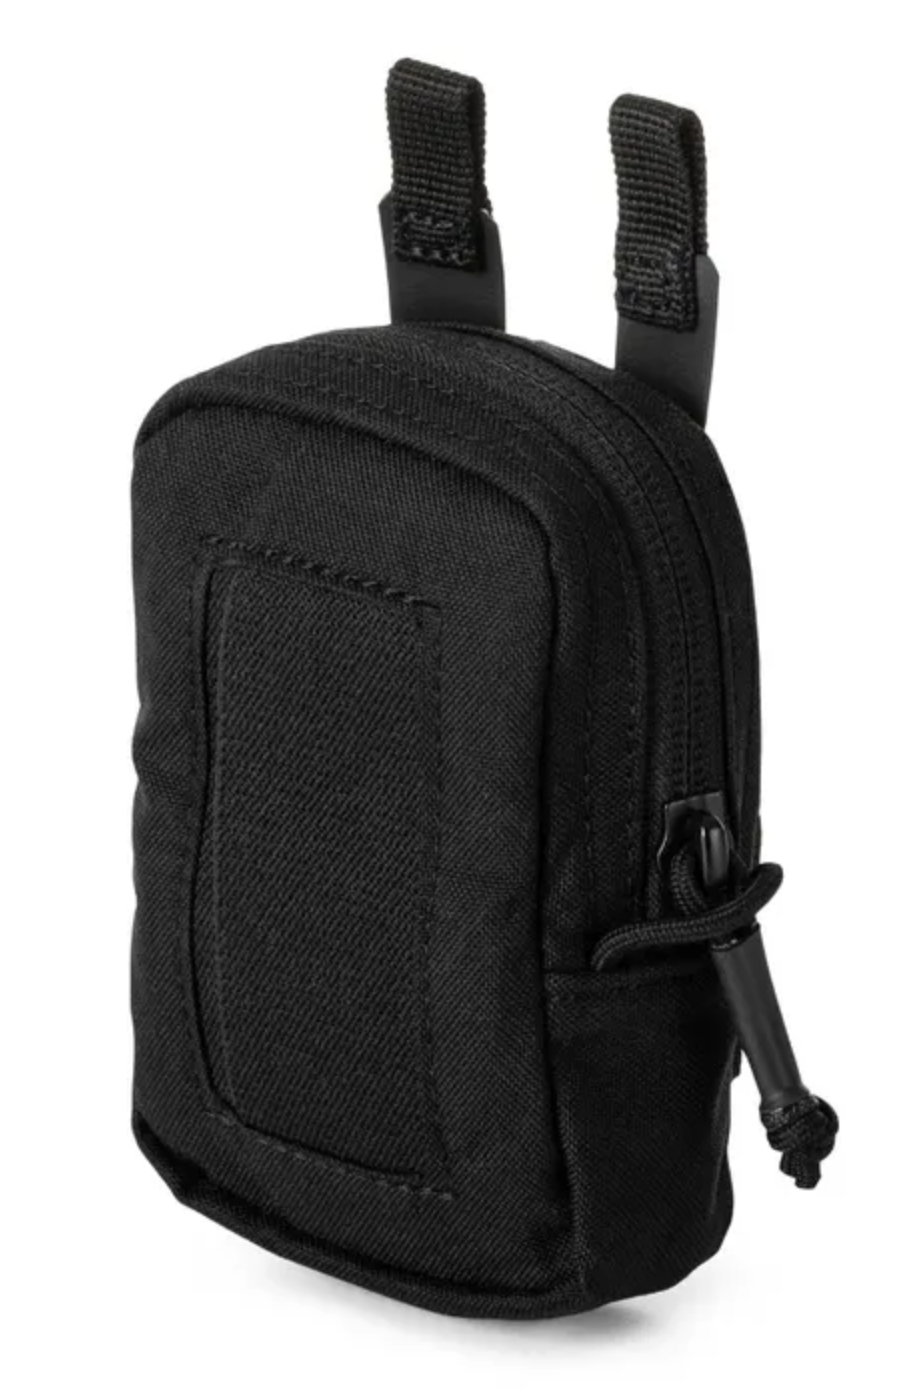 5.11 - Flex Disposable Glove pouch - Black (019)